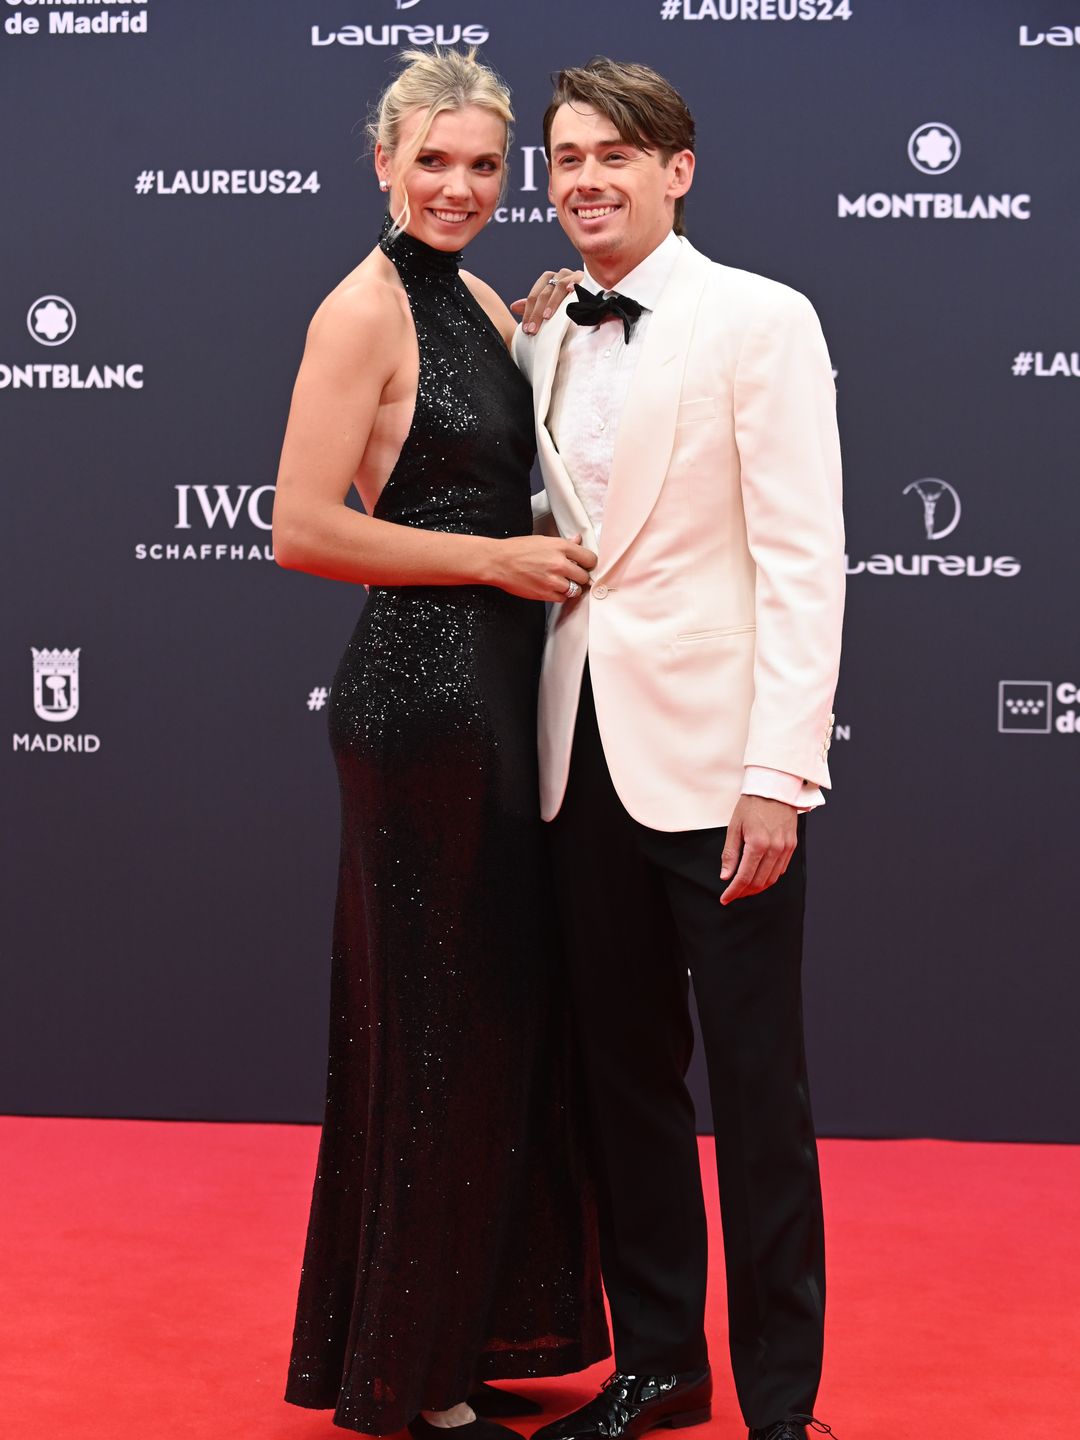 Katie Boulter and Alex de Minaur pose on the red carpet